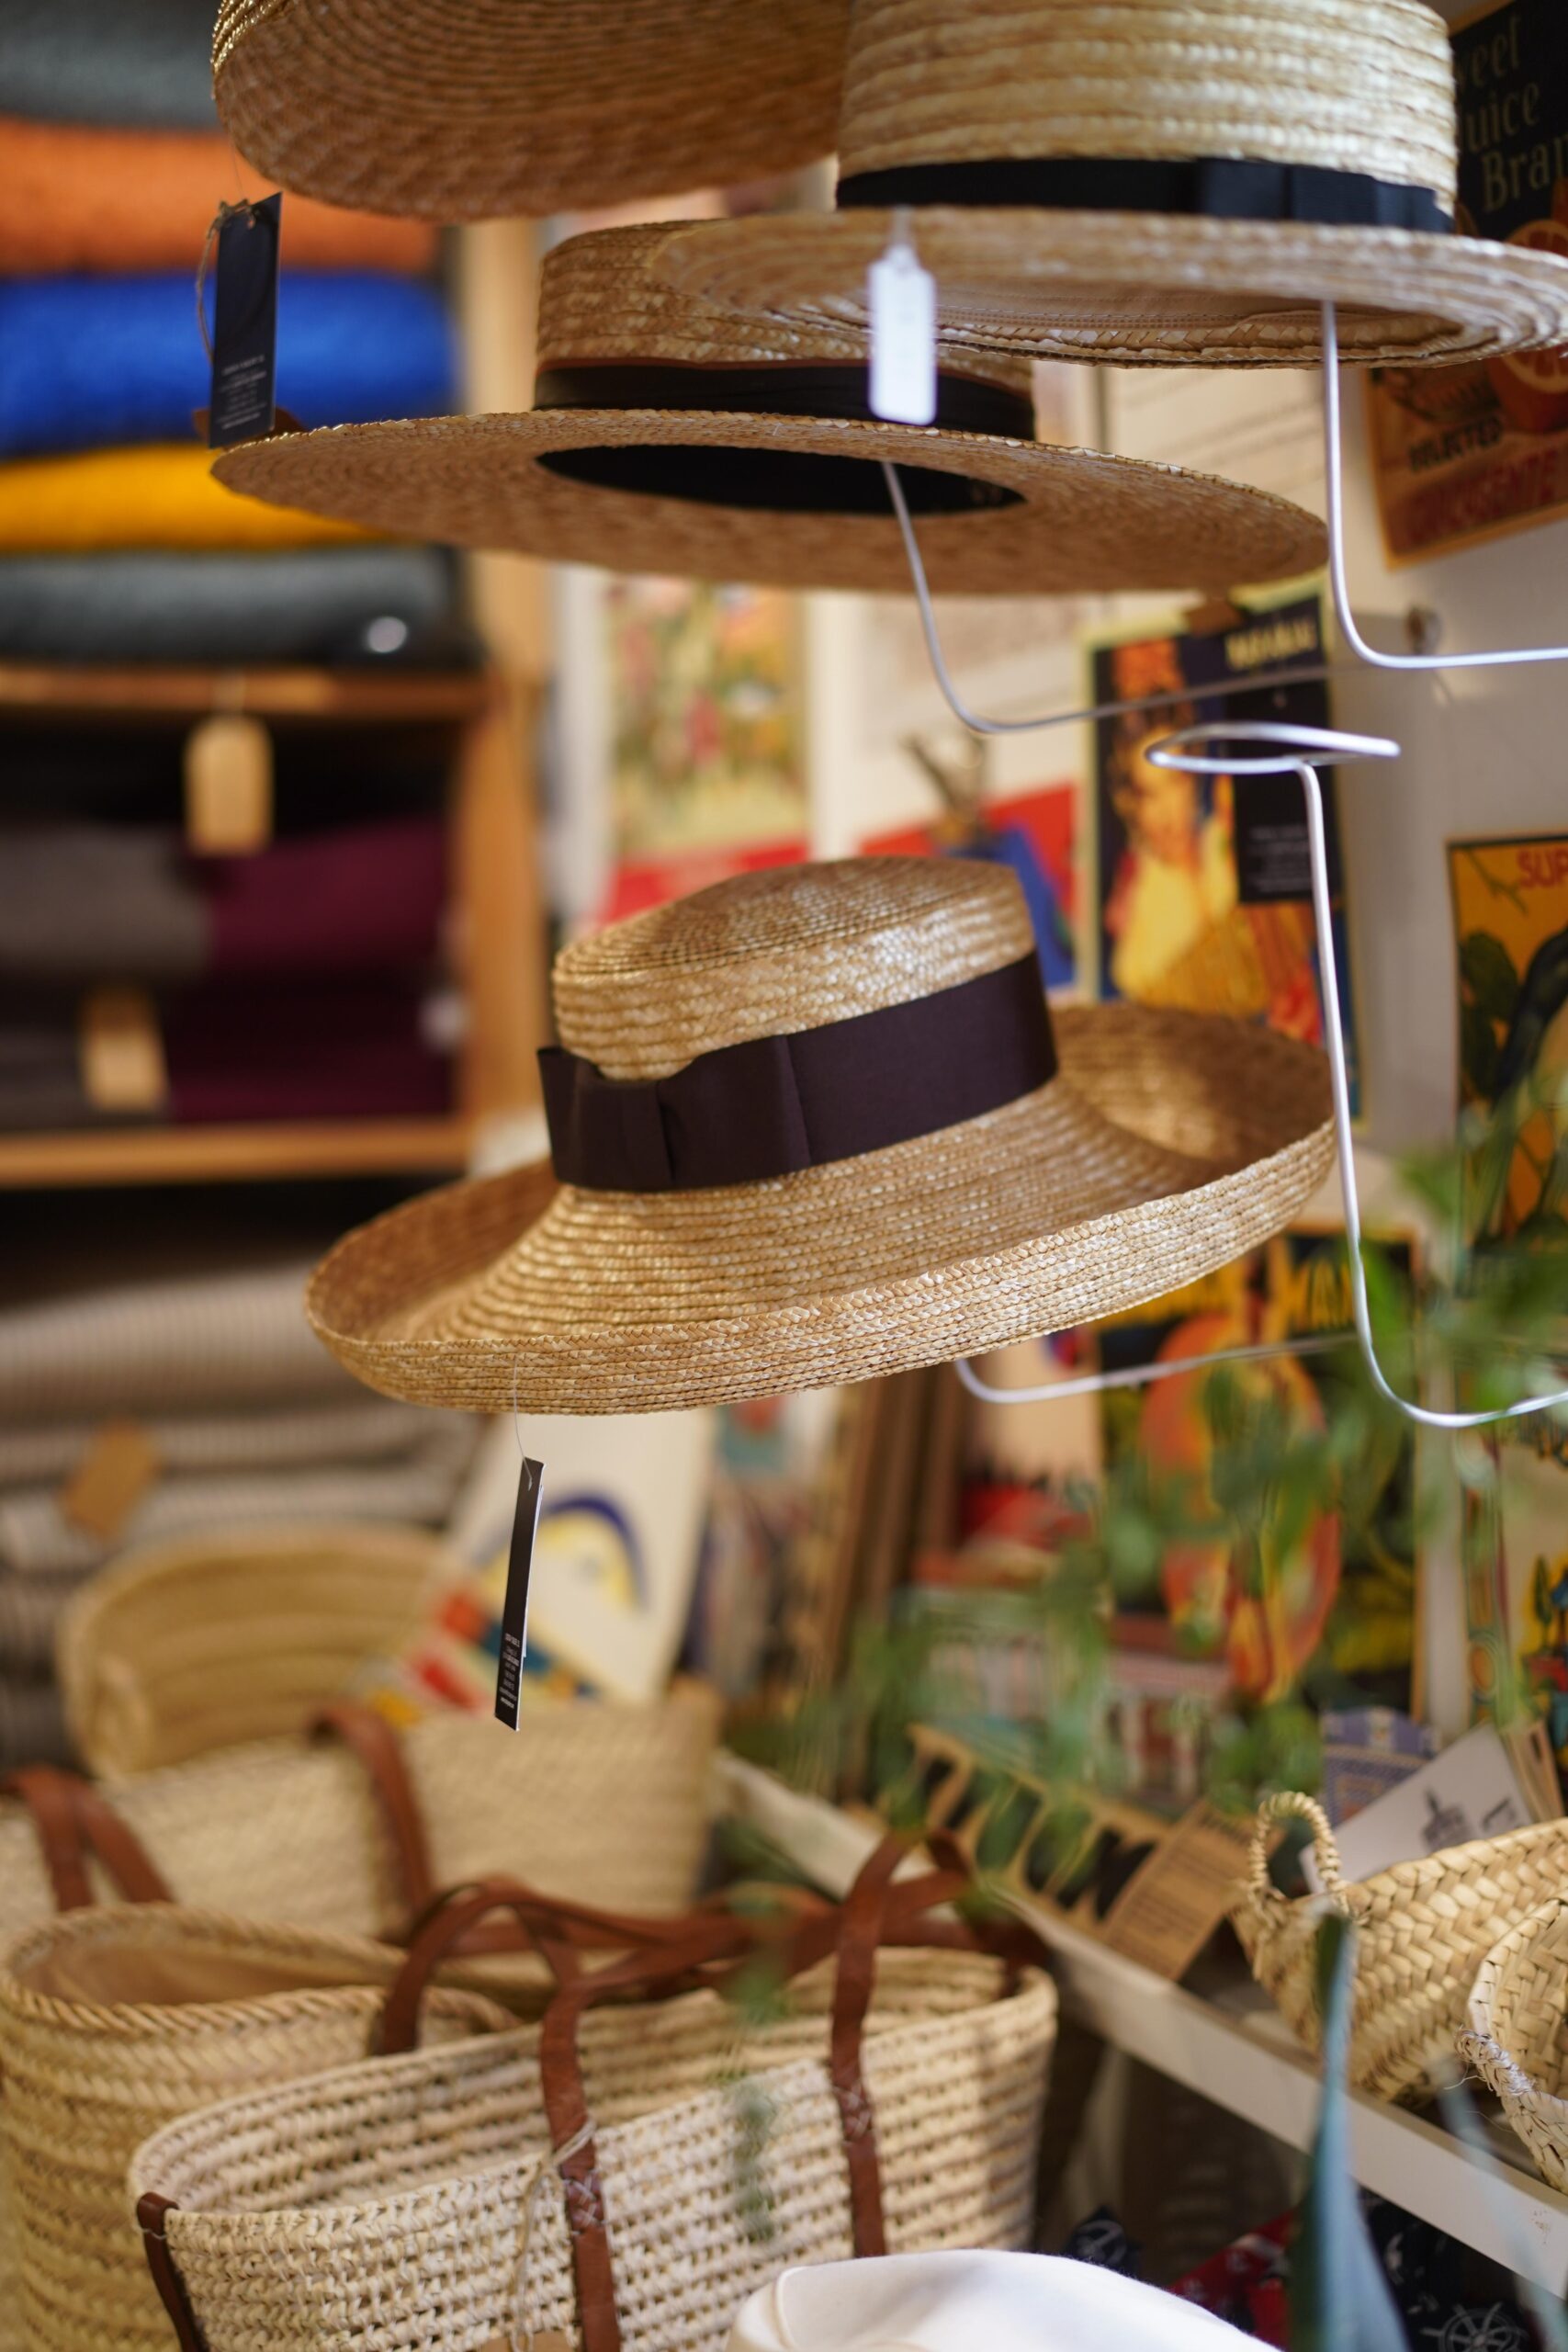 SIMPLE TIENDA: de lokale ‘made in Spain’ winkel die staat voor authenticiteit en duurzaamheid van objecten die verhalen vertellen